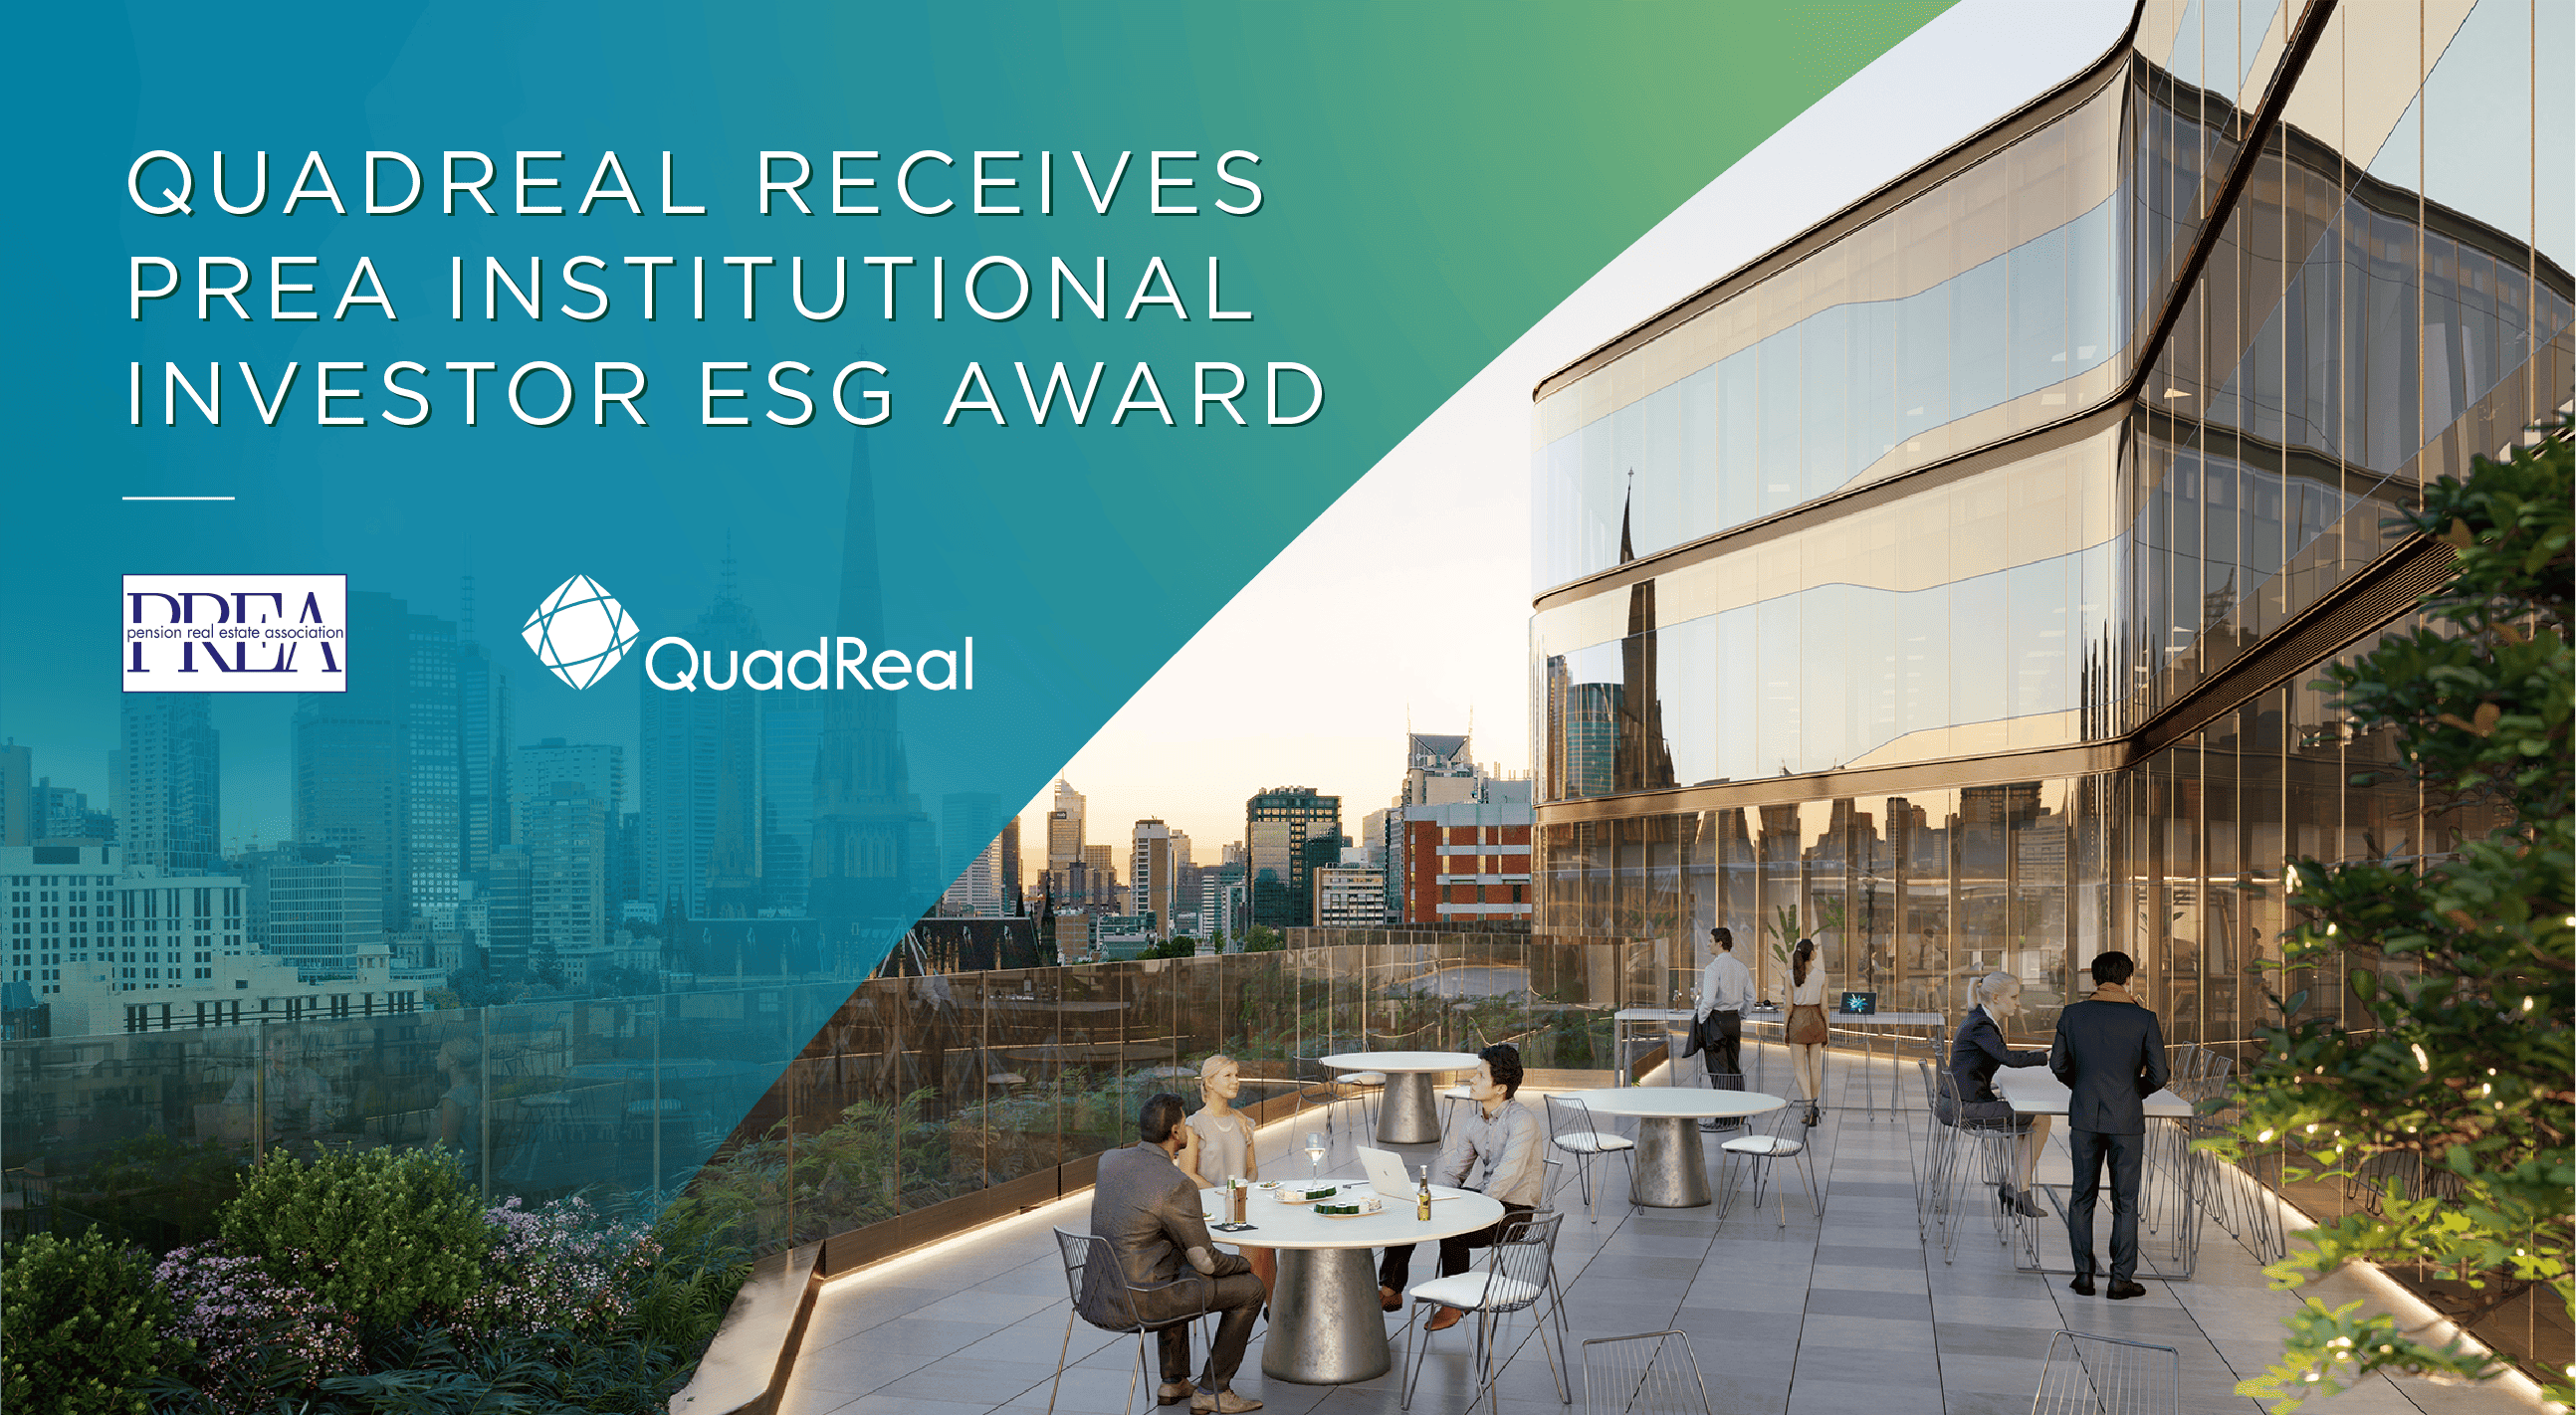 QuadReal a l’honneur de recevoir le prestigieux prix ESG pour les investisseurs institutionnels décerné par PREA